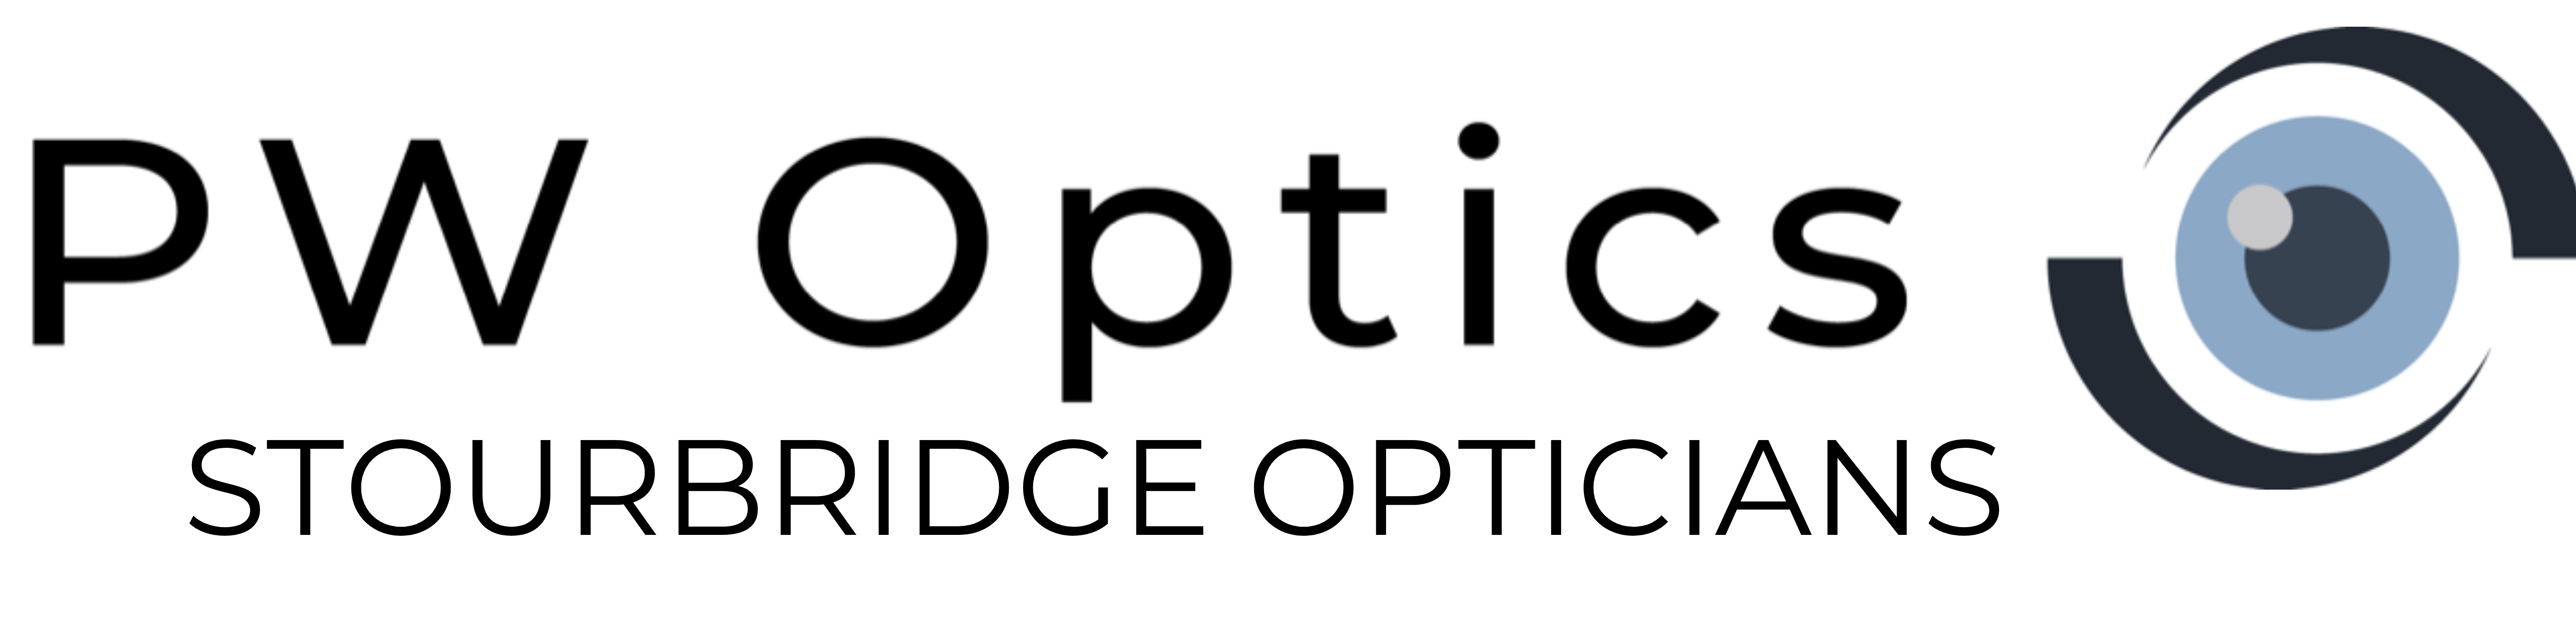 Logo of P W Optics - Award Winning Stourbridge Opticians Opticians - Ophthalmic Optometrists In Stourbridge, West Midlands